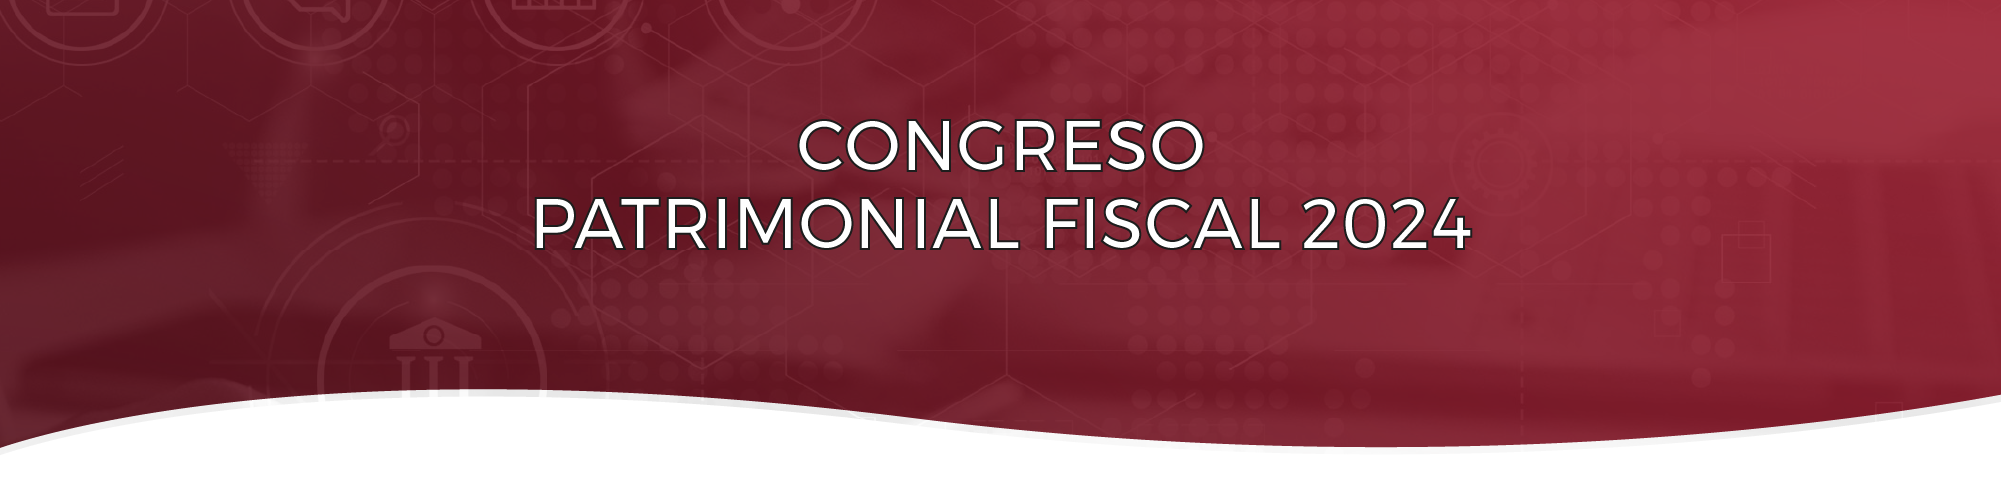 Congreso Patrimonial Fiscal 2024